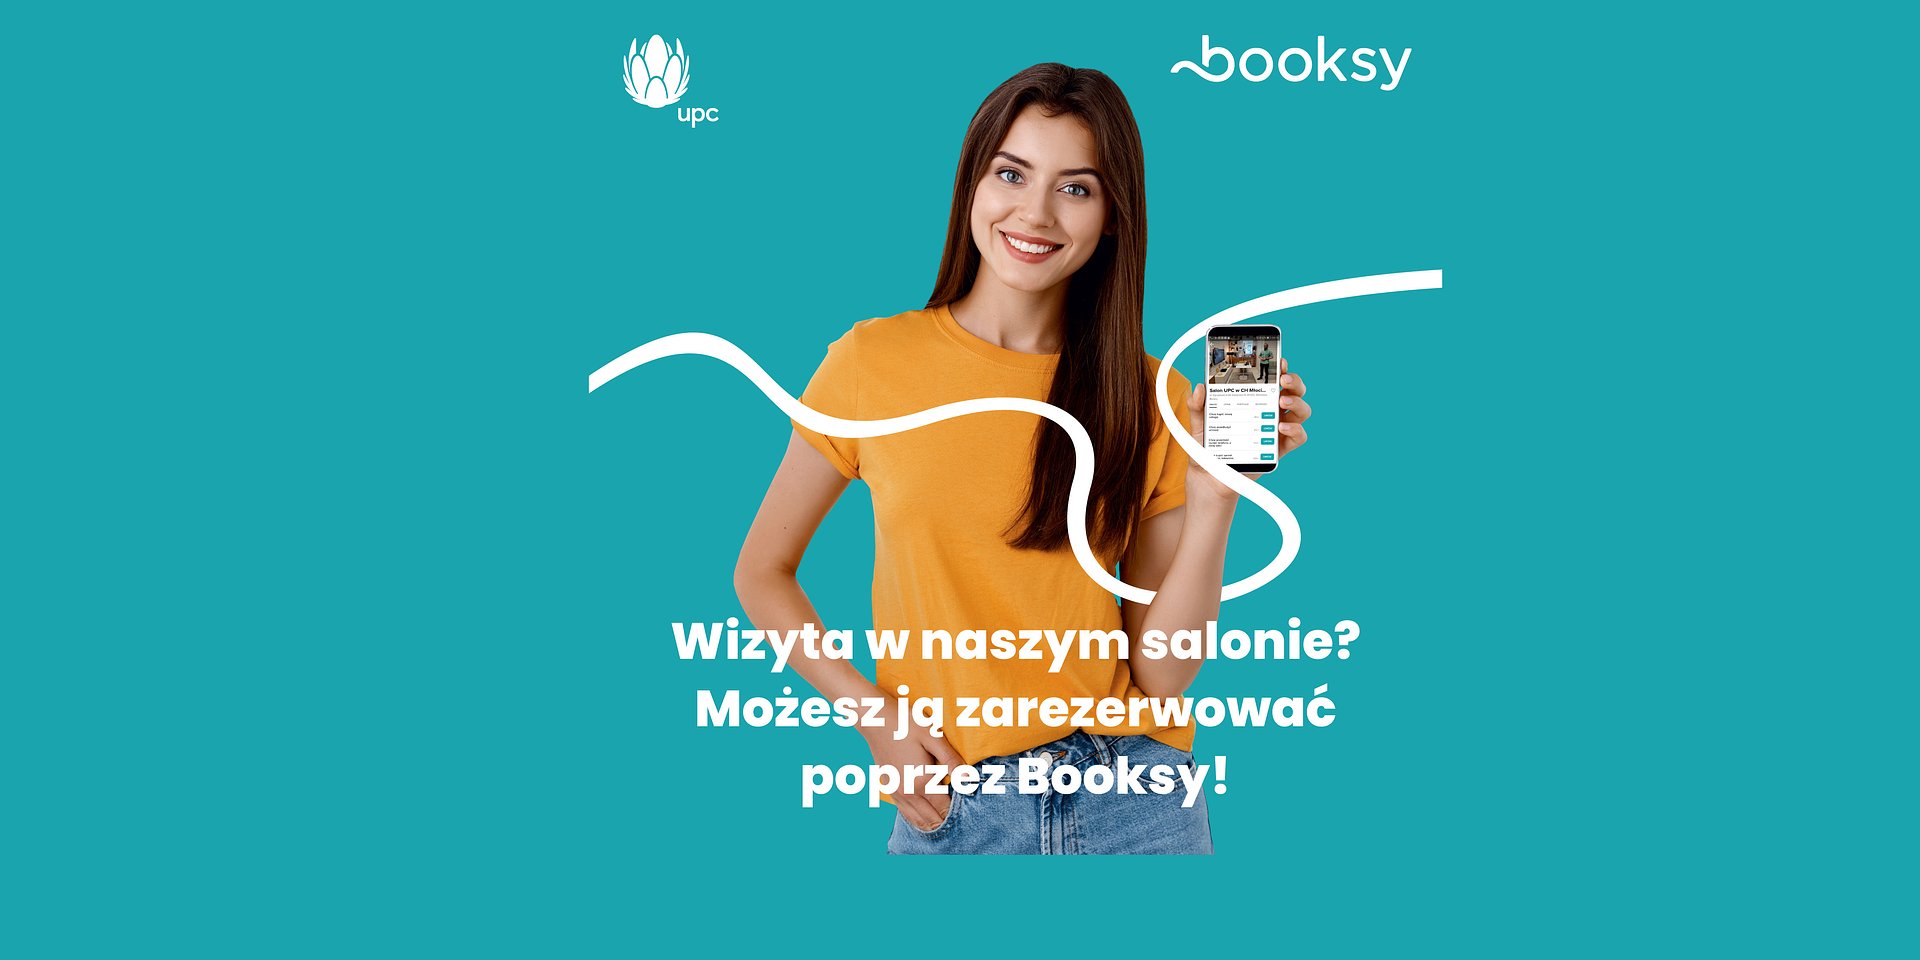 UPC Polska wchodzi na Booksy – Klienci mogą jeszcze szybciej i łatwiej rezerwować wizyty w salonach i w domu